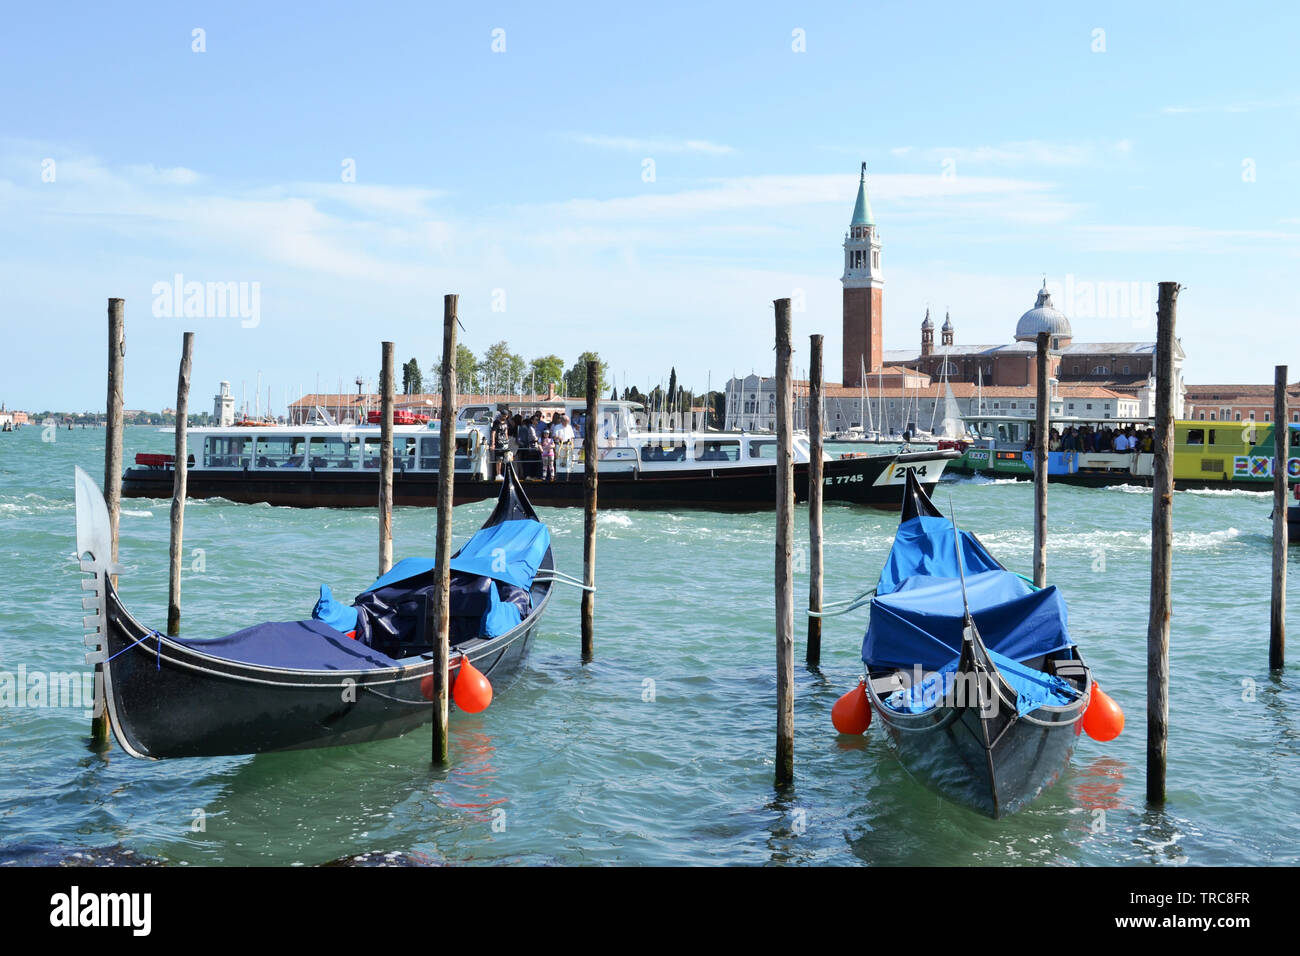 Venise/Italie - 8 mai 2015 : une vue panoramique sur la lagune de Venise, San Giorgio Maggiore island, deux gondoles ancrées à poteaux et de navire à passagers. Banque D'Images